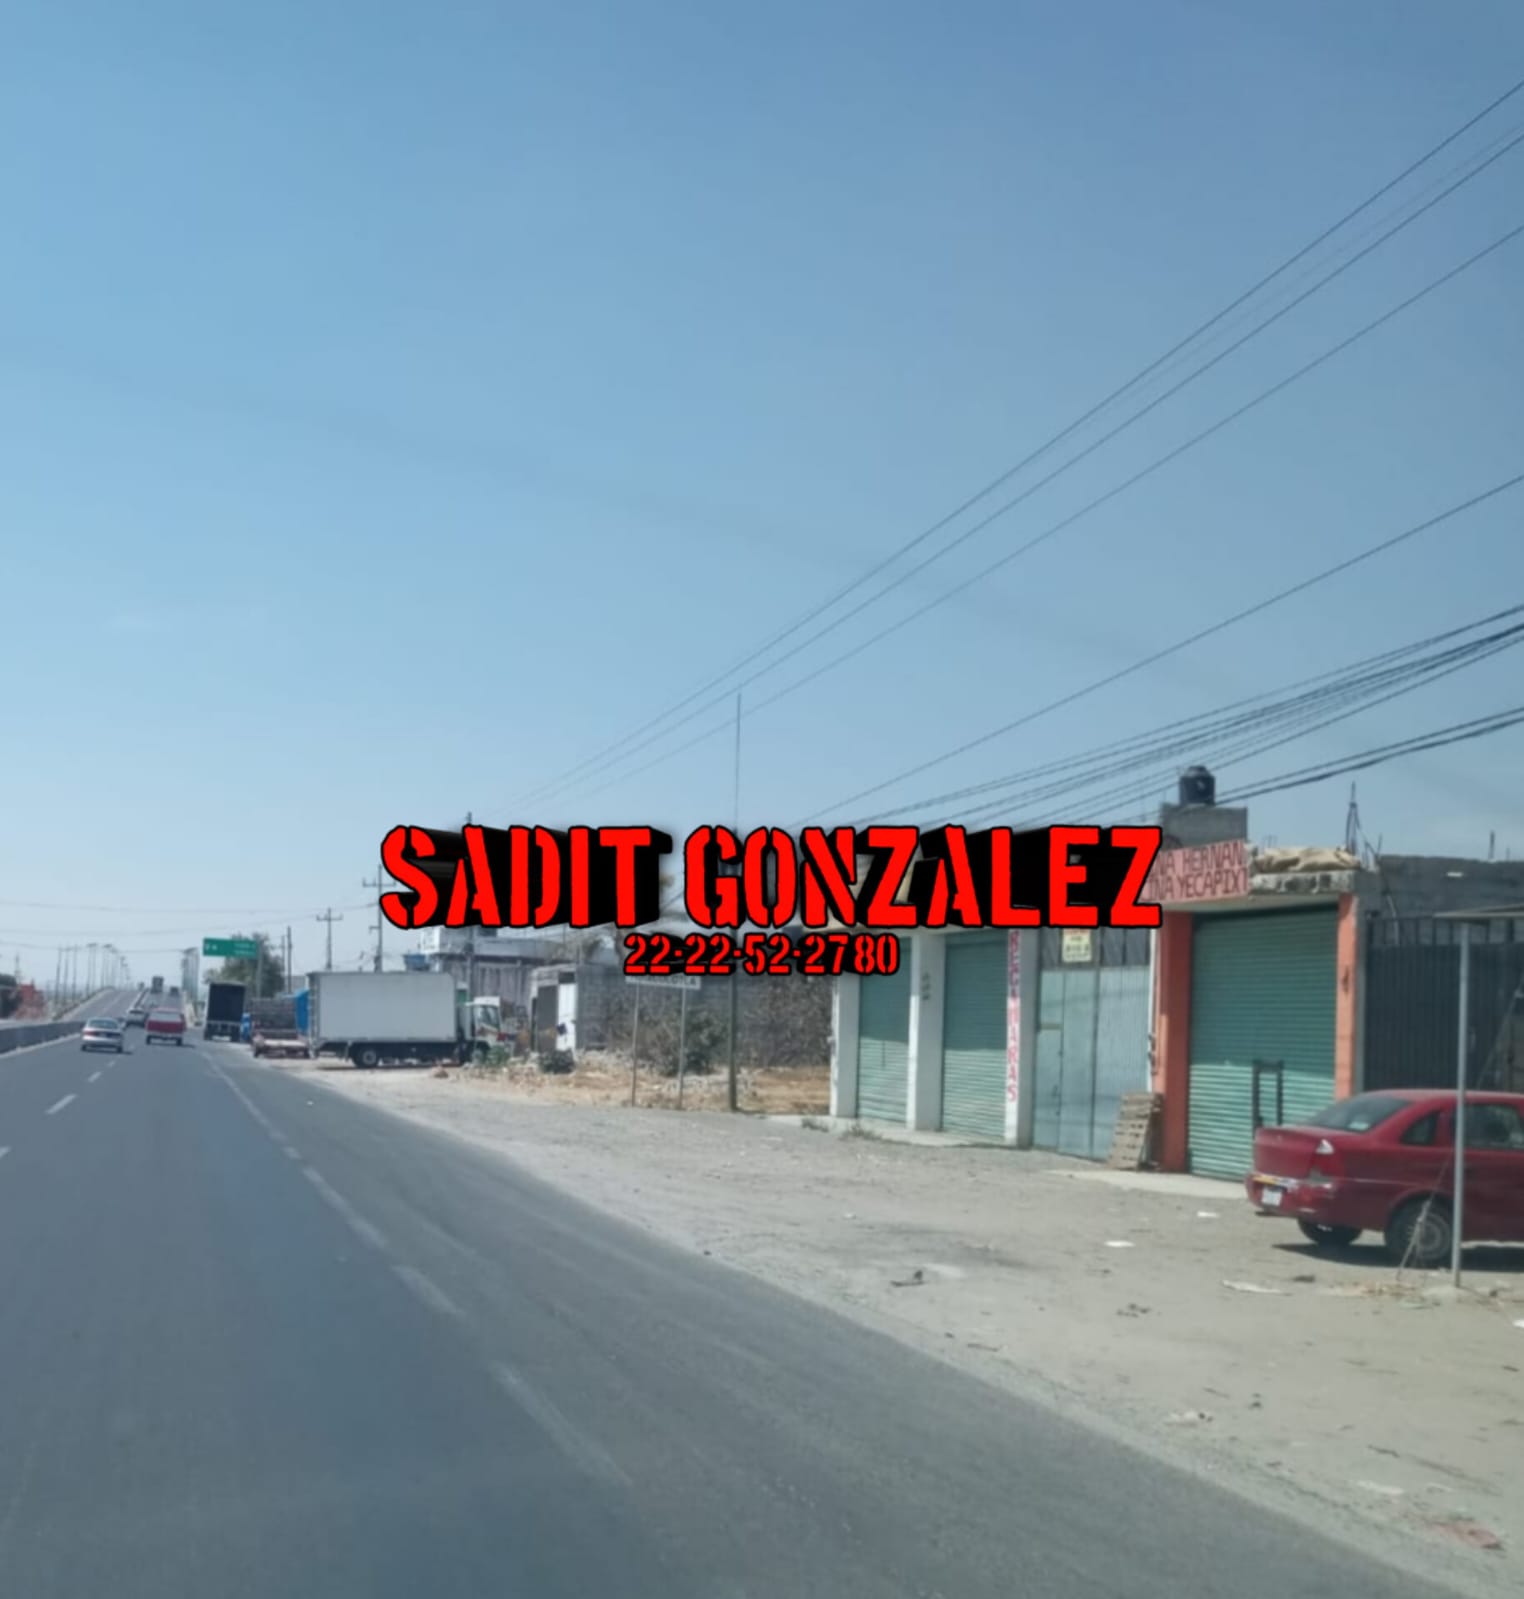 Asesinan a balazos a comerciante de 20 años en Huixcolotla